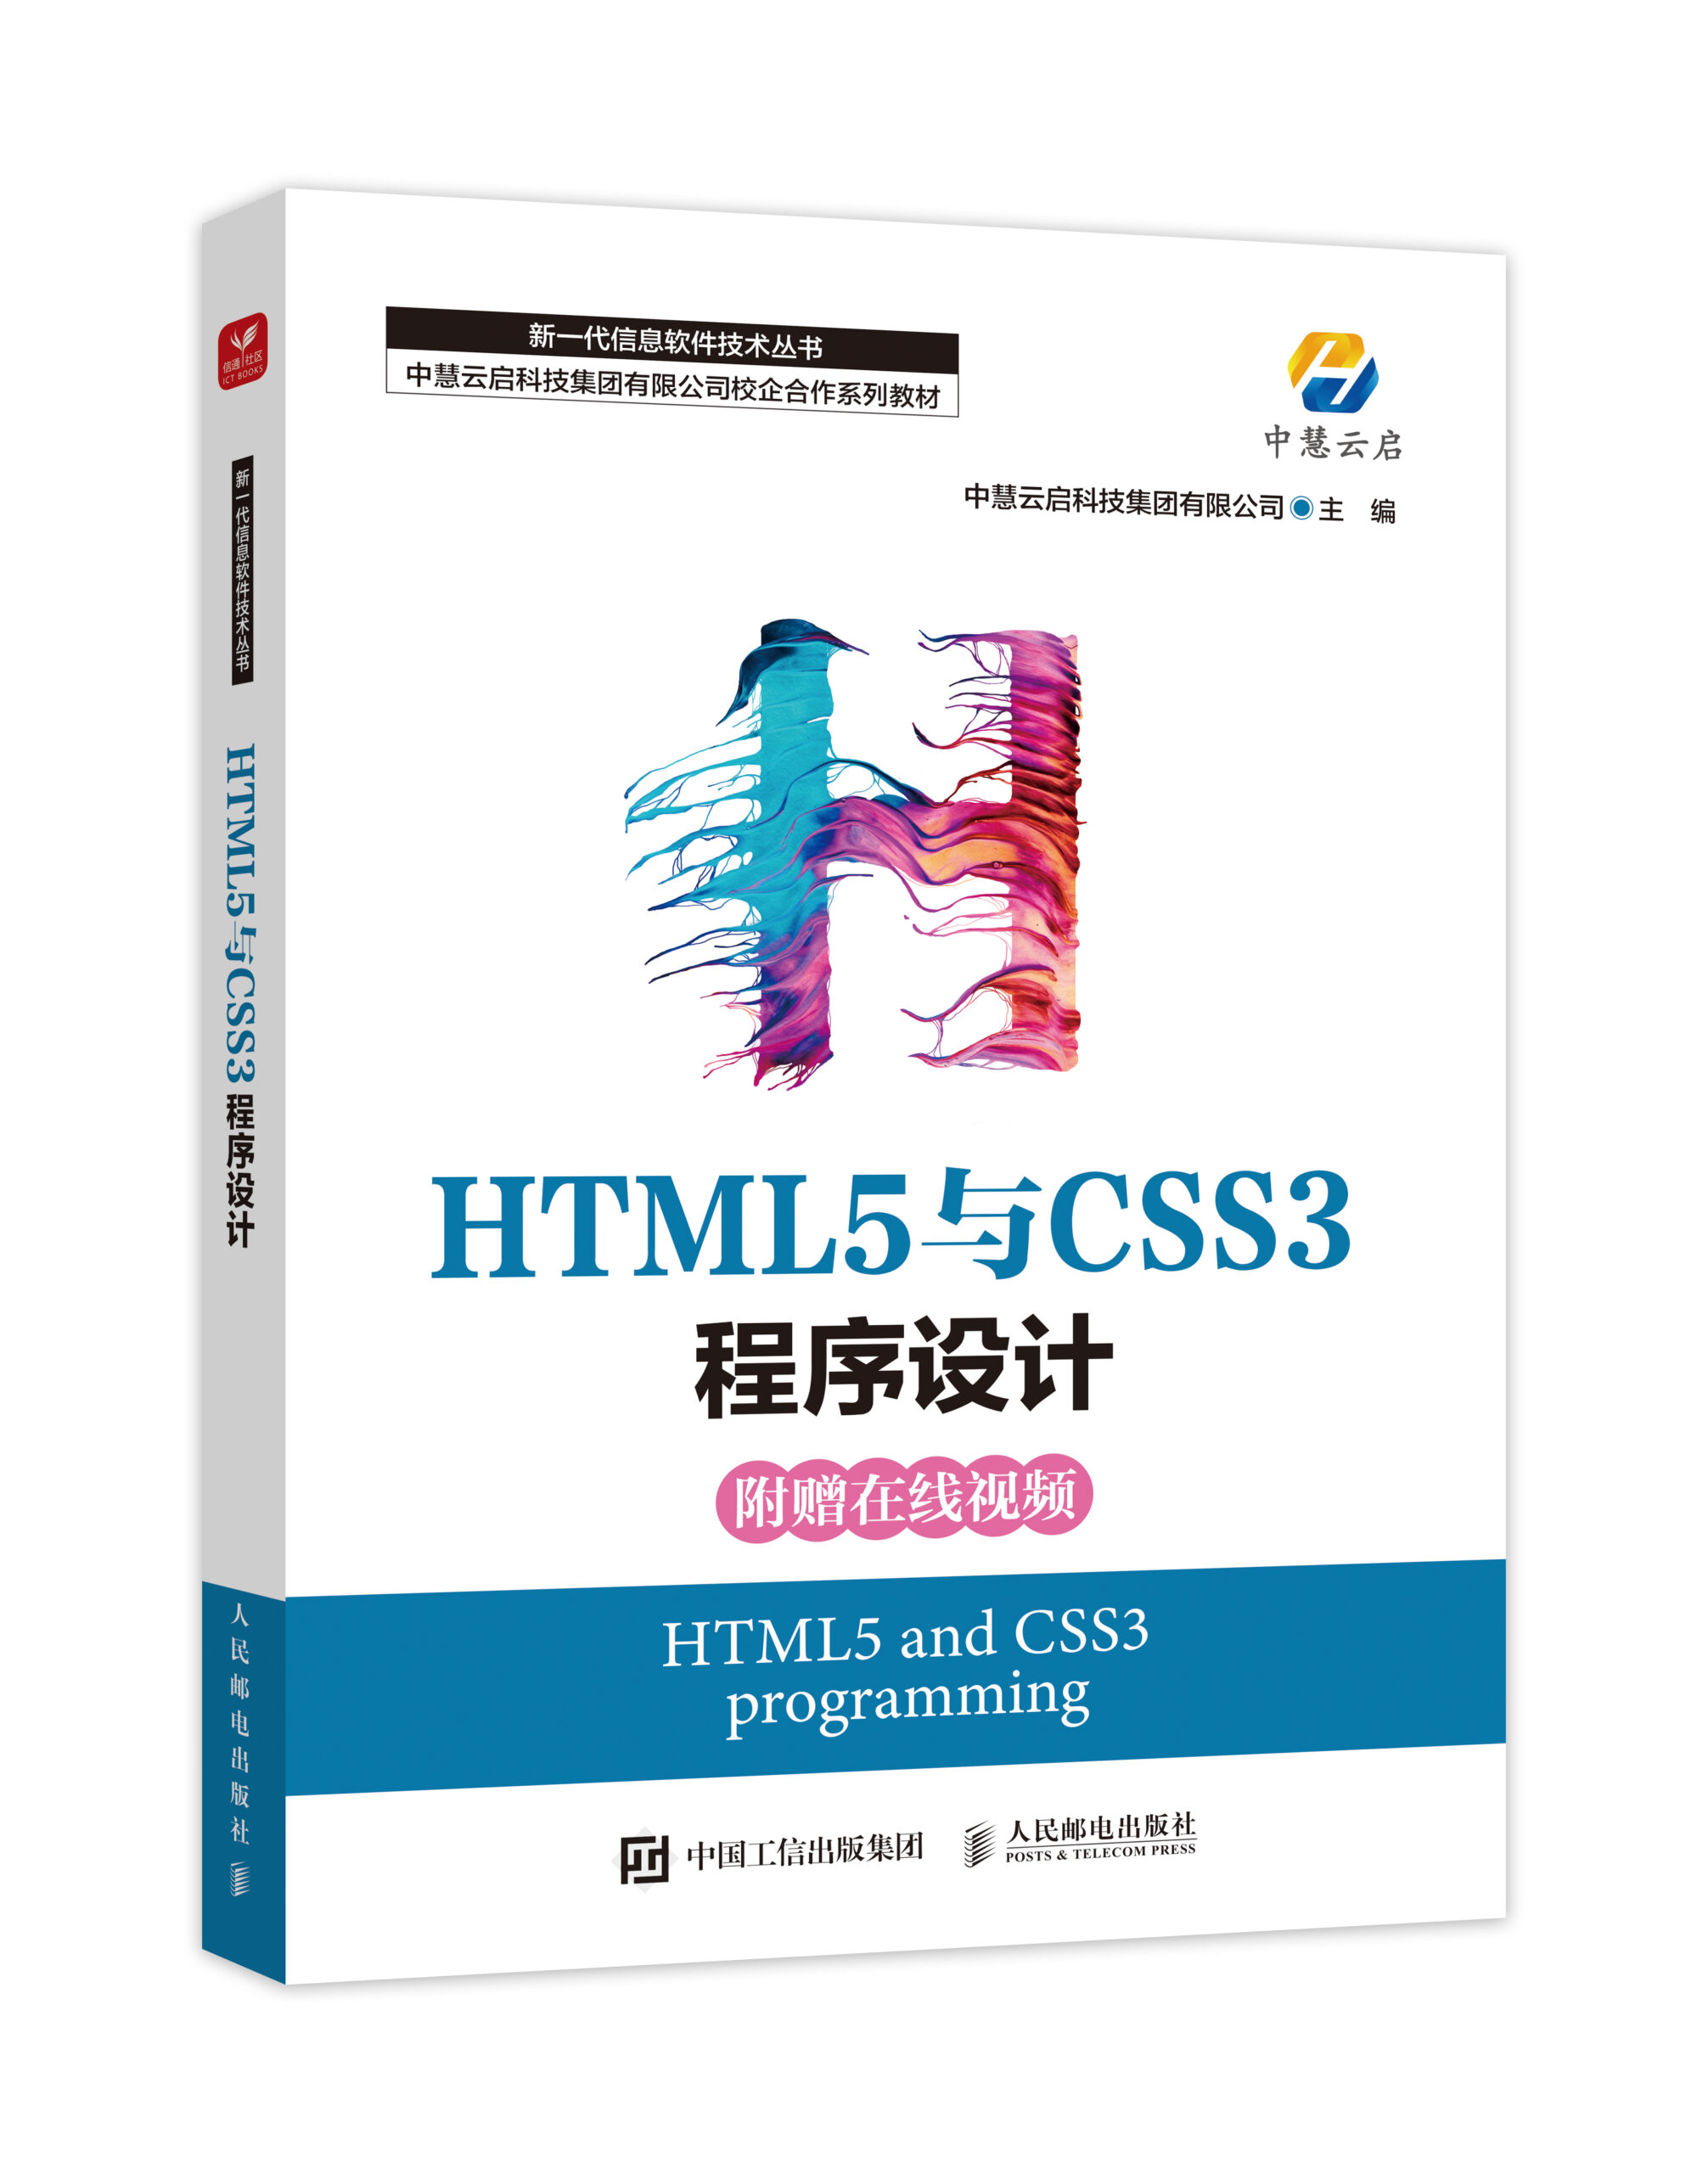 中慧集团Web技术系列教材-《HTML5与CSS3程序设计》介绍